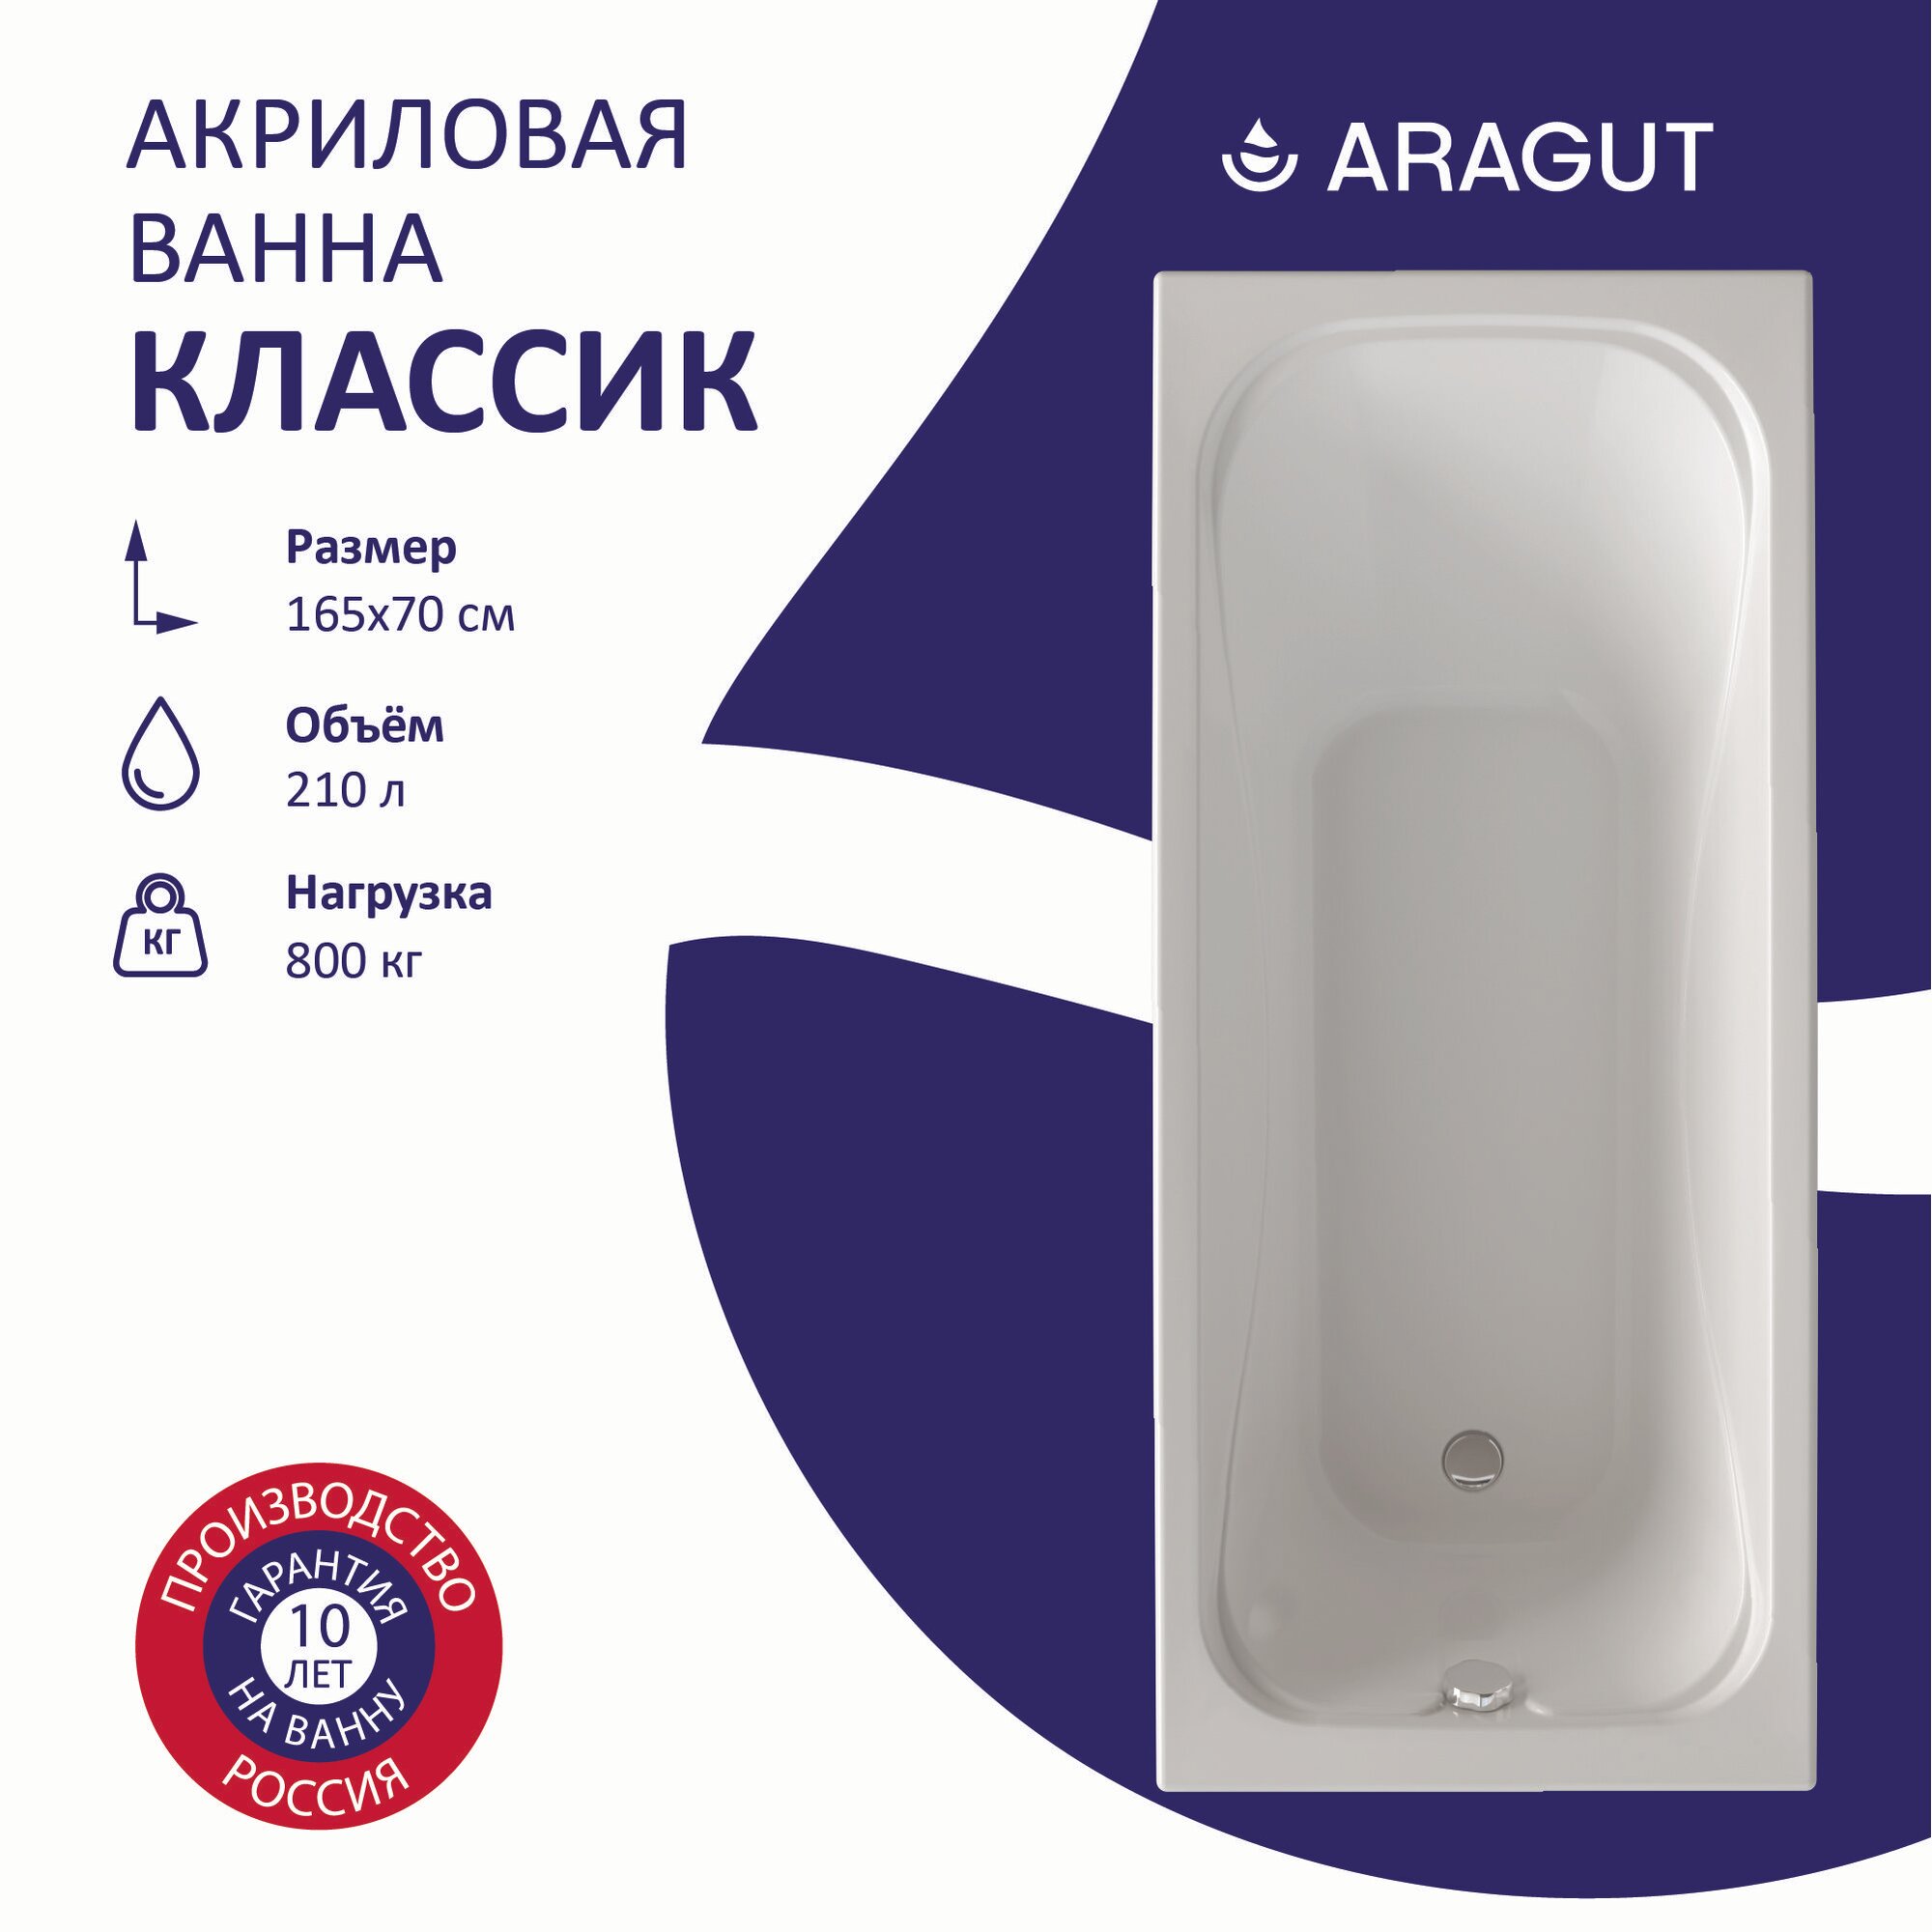 Акриловая ванна ARAGUT Классик 165х70